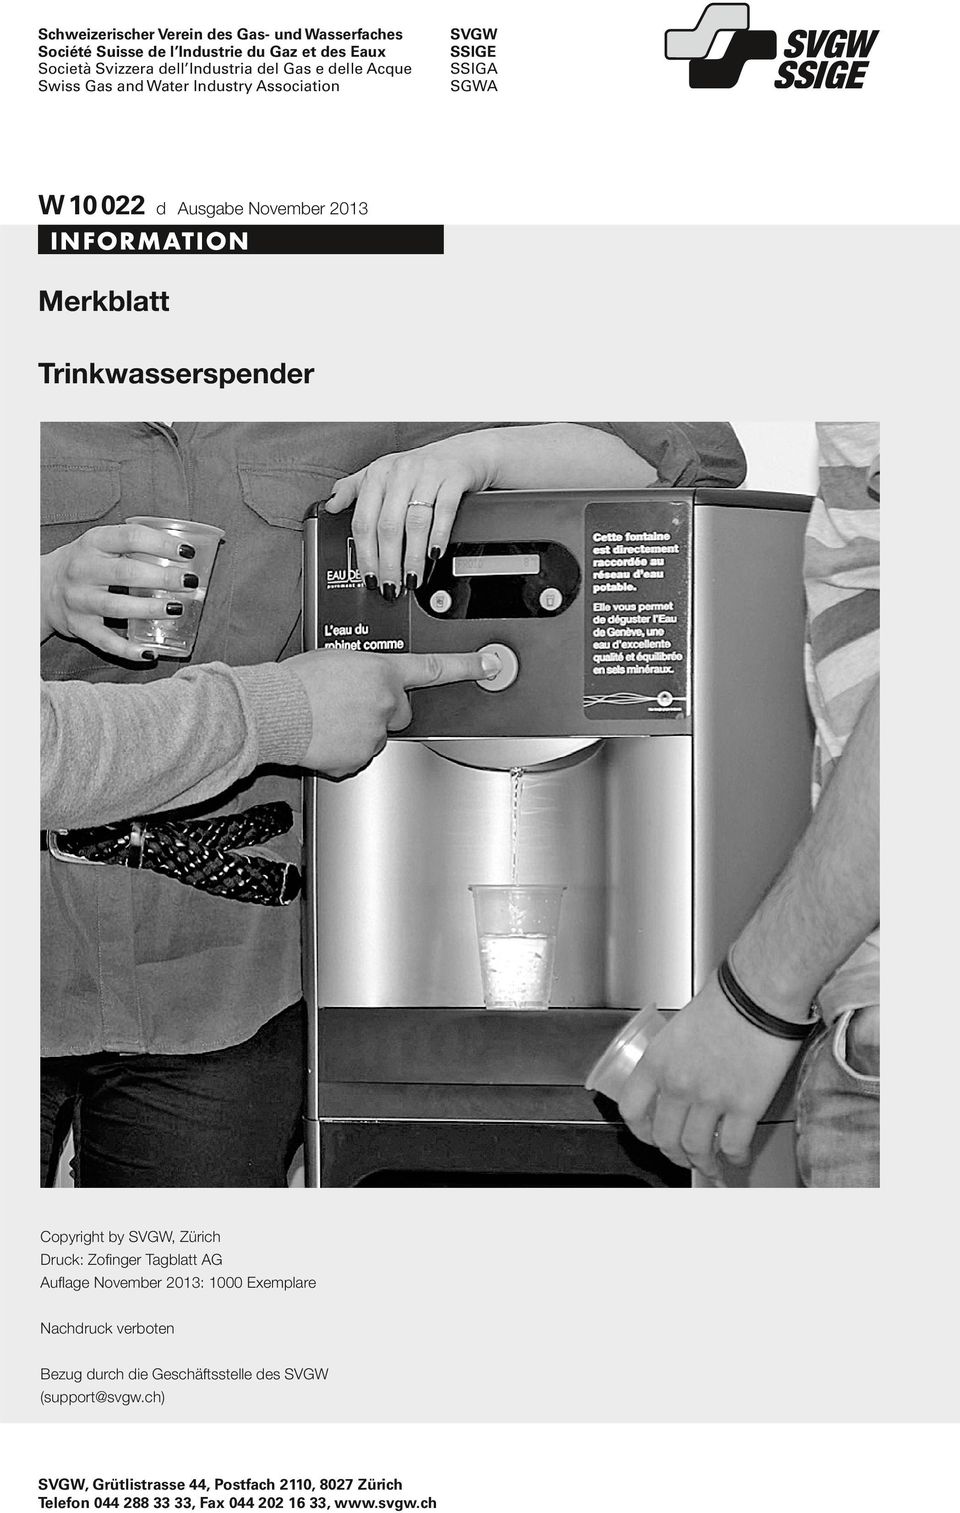 Trinkwasserspender Copyright by SVGW, Zürich Druck: Zofinger Tagblatt AG Auflage November 2013: 1000 Exemplare Nachdruck verboten Bezug